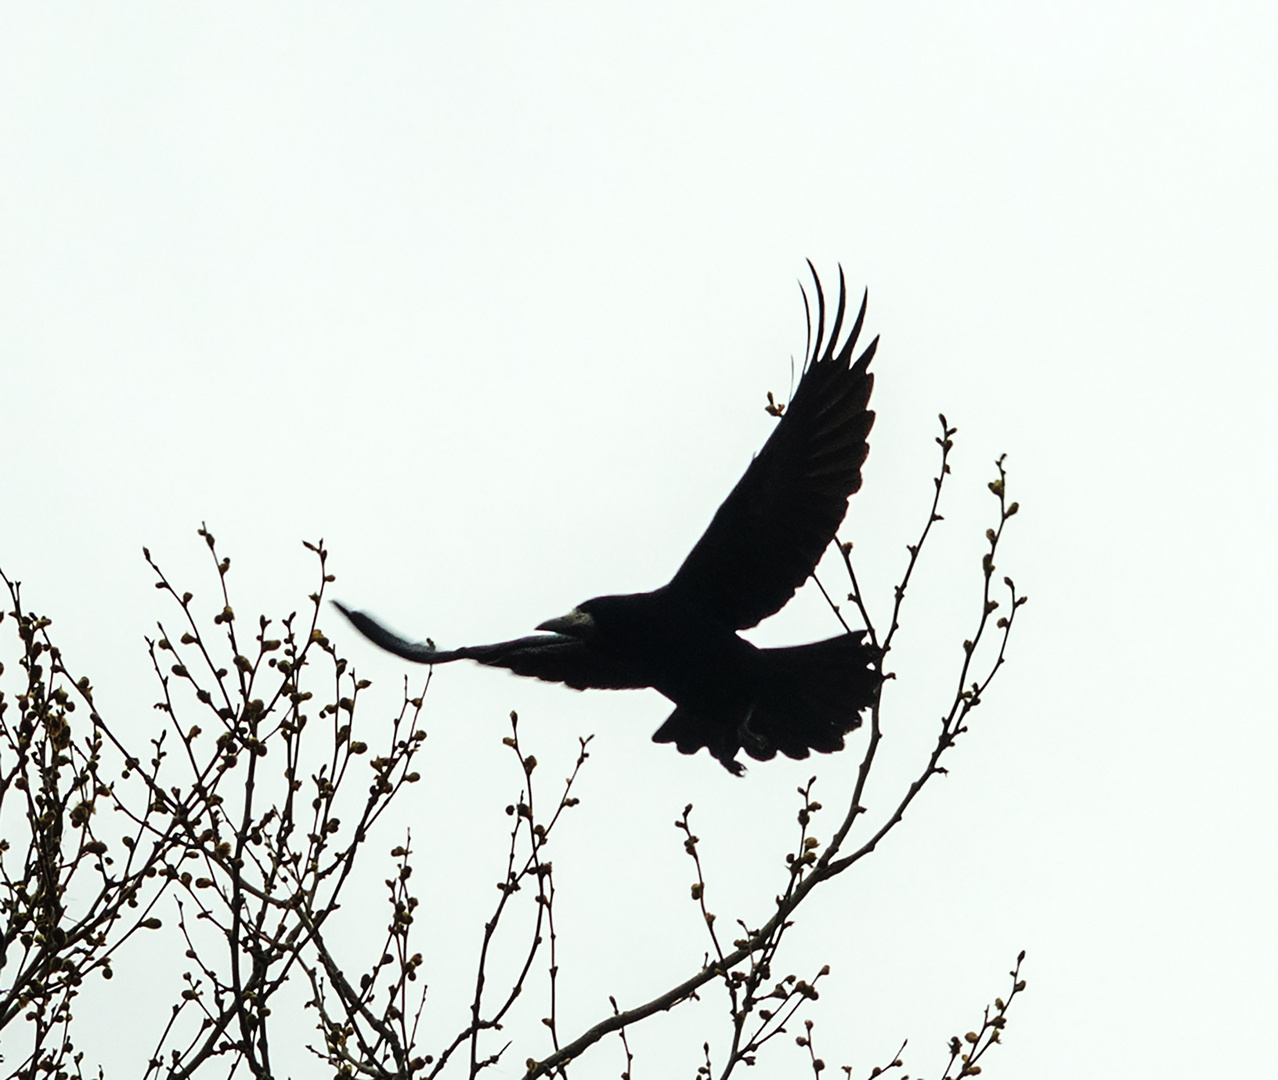 Saatkrähe (Corvus frugilegus frugilegus)